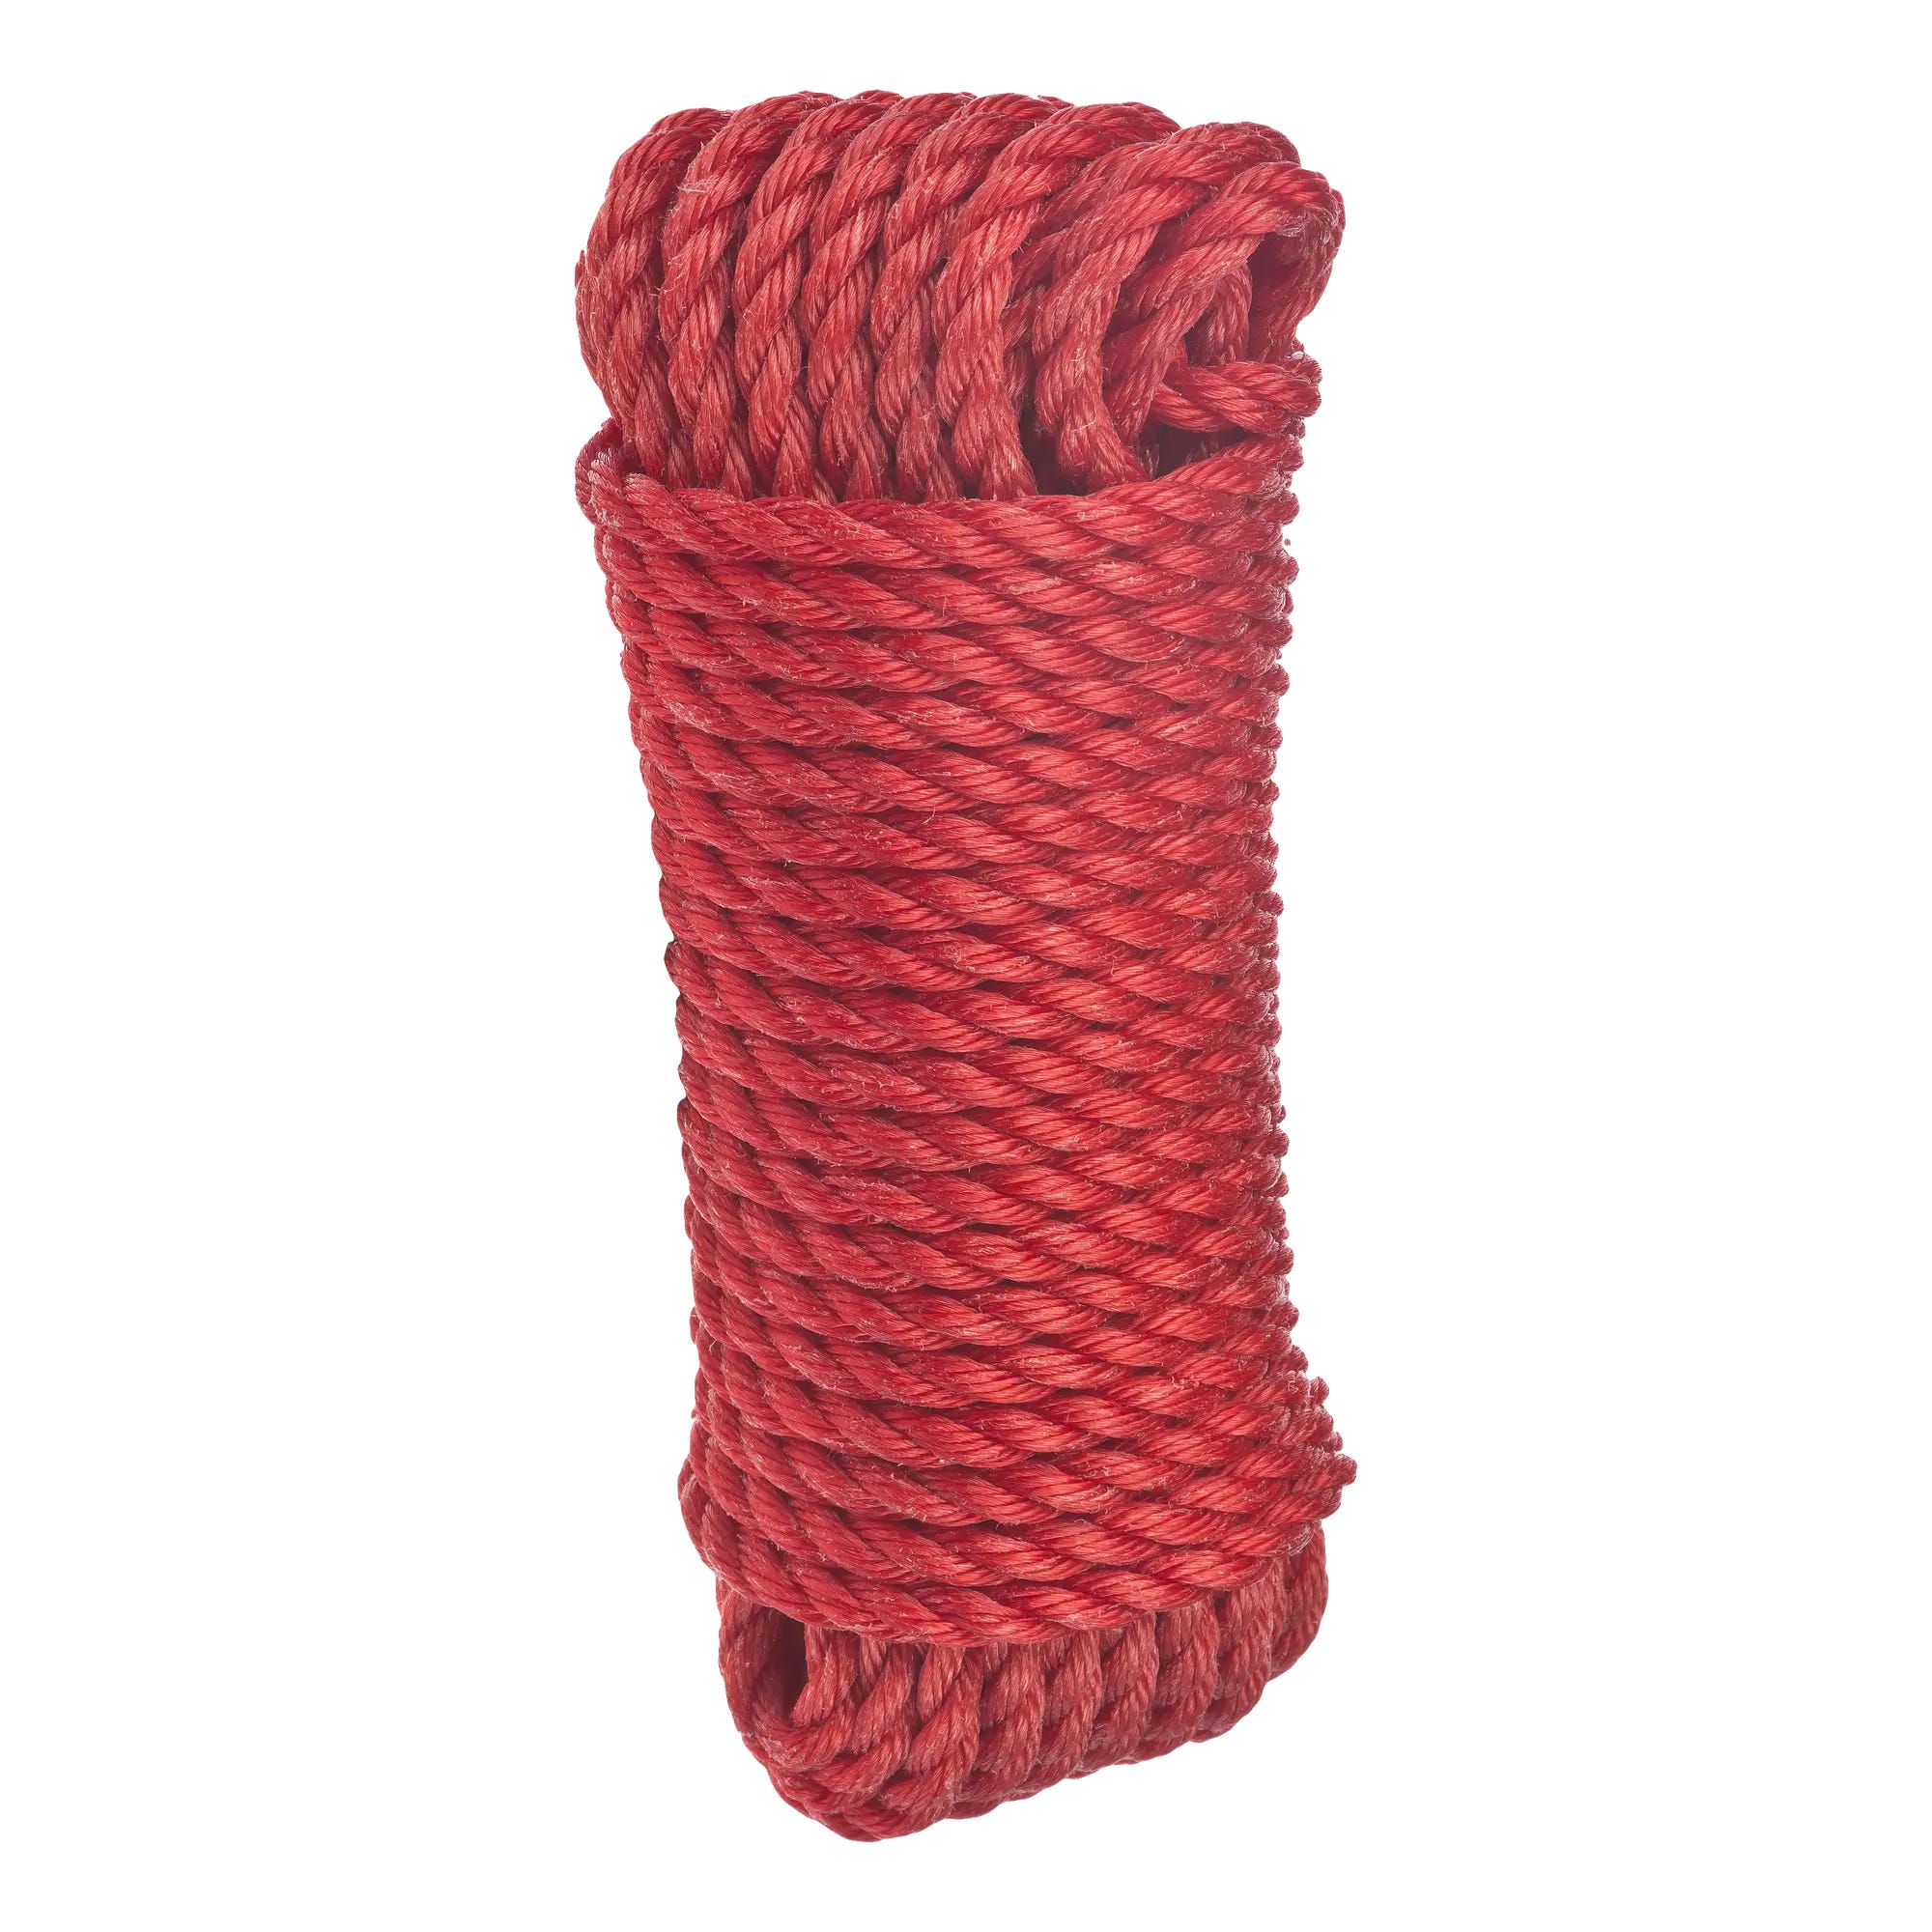 Cuerda para tender la ropa de polipropileno de 20 m y 3 kg de carga útil